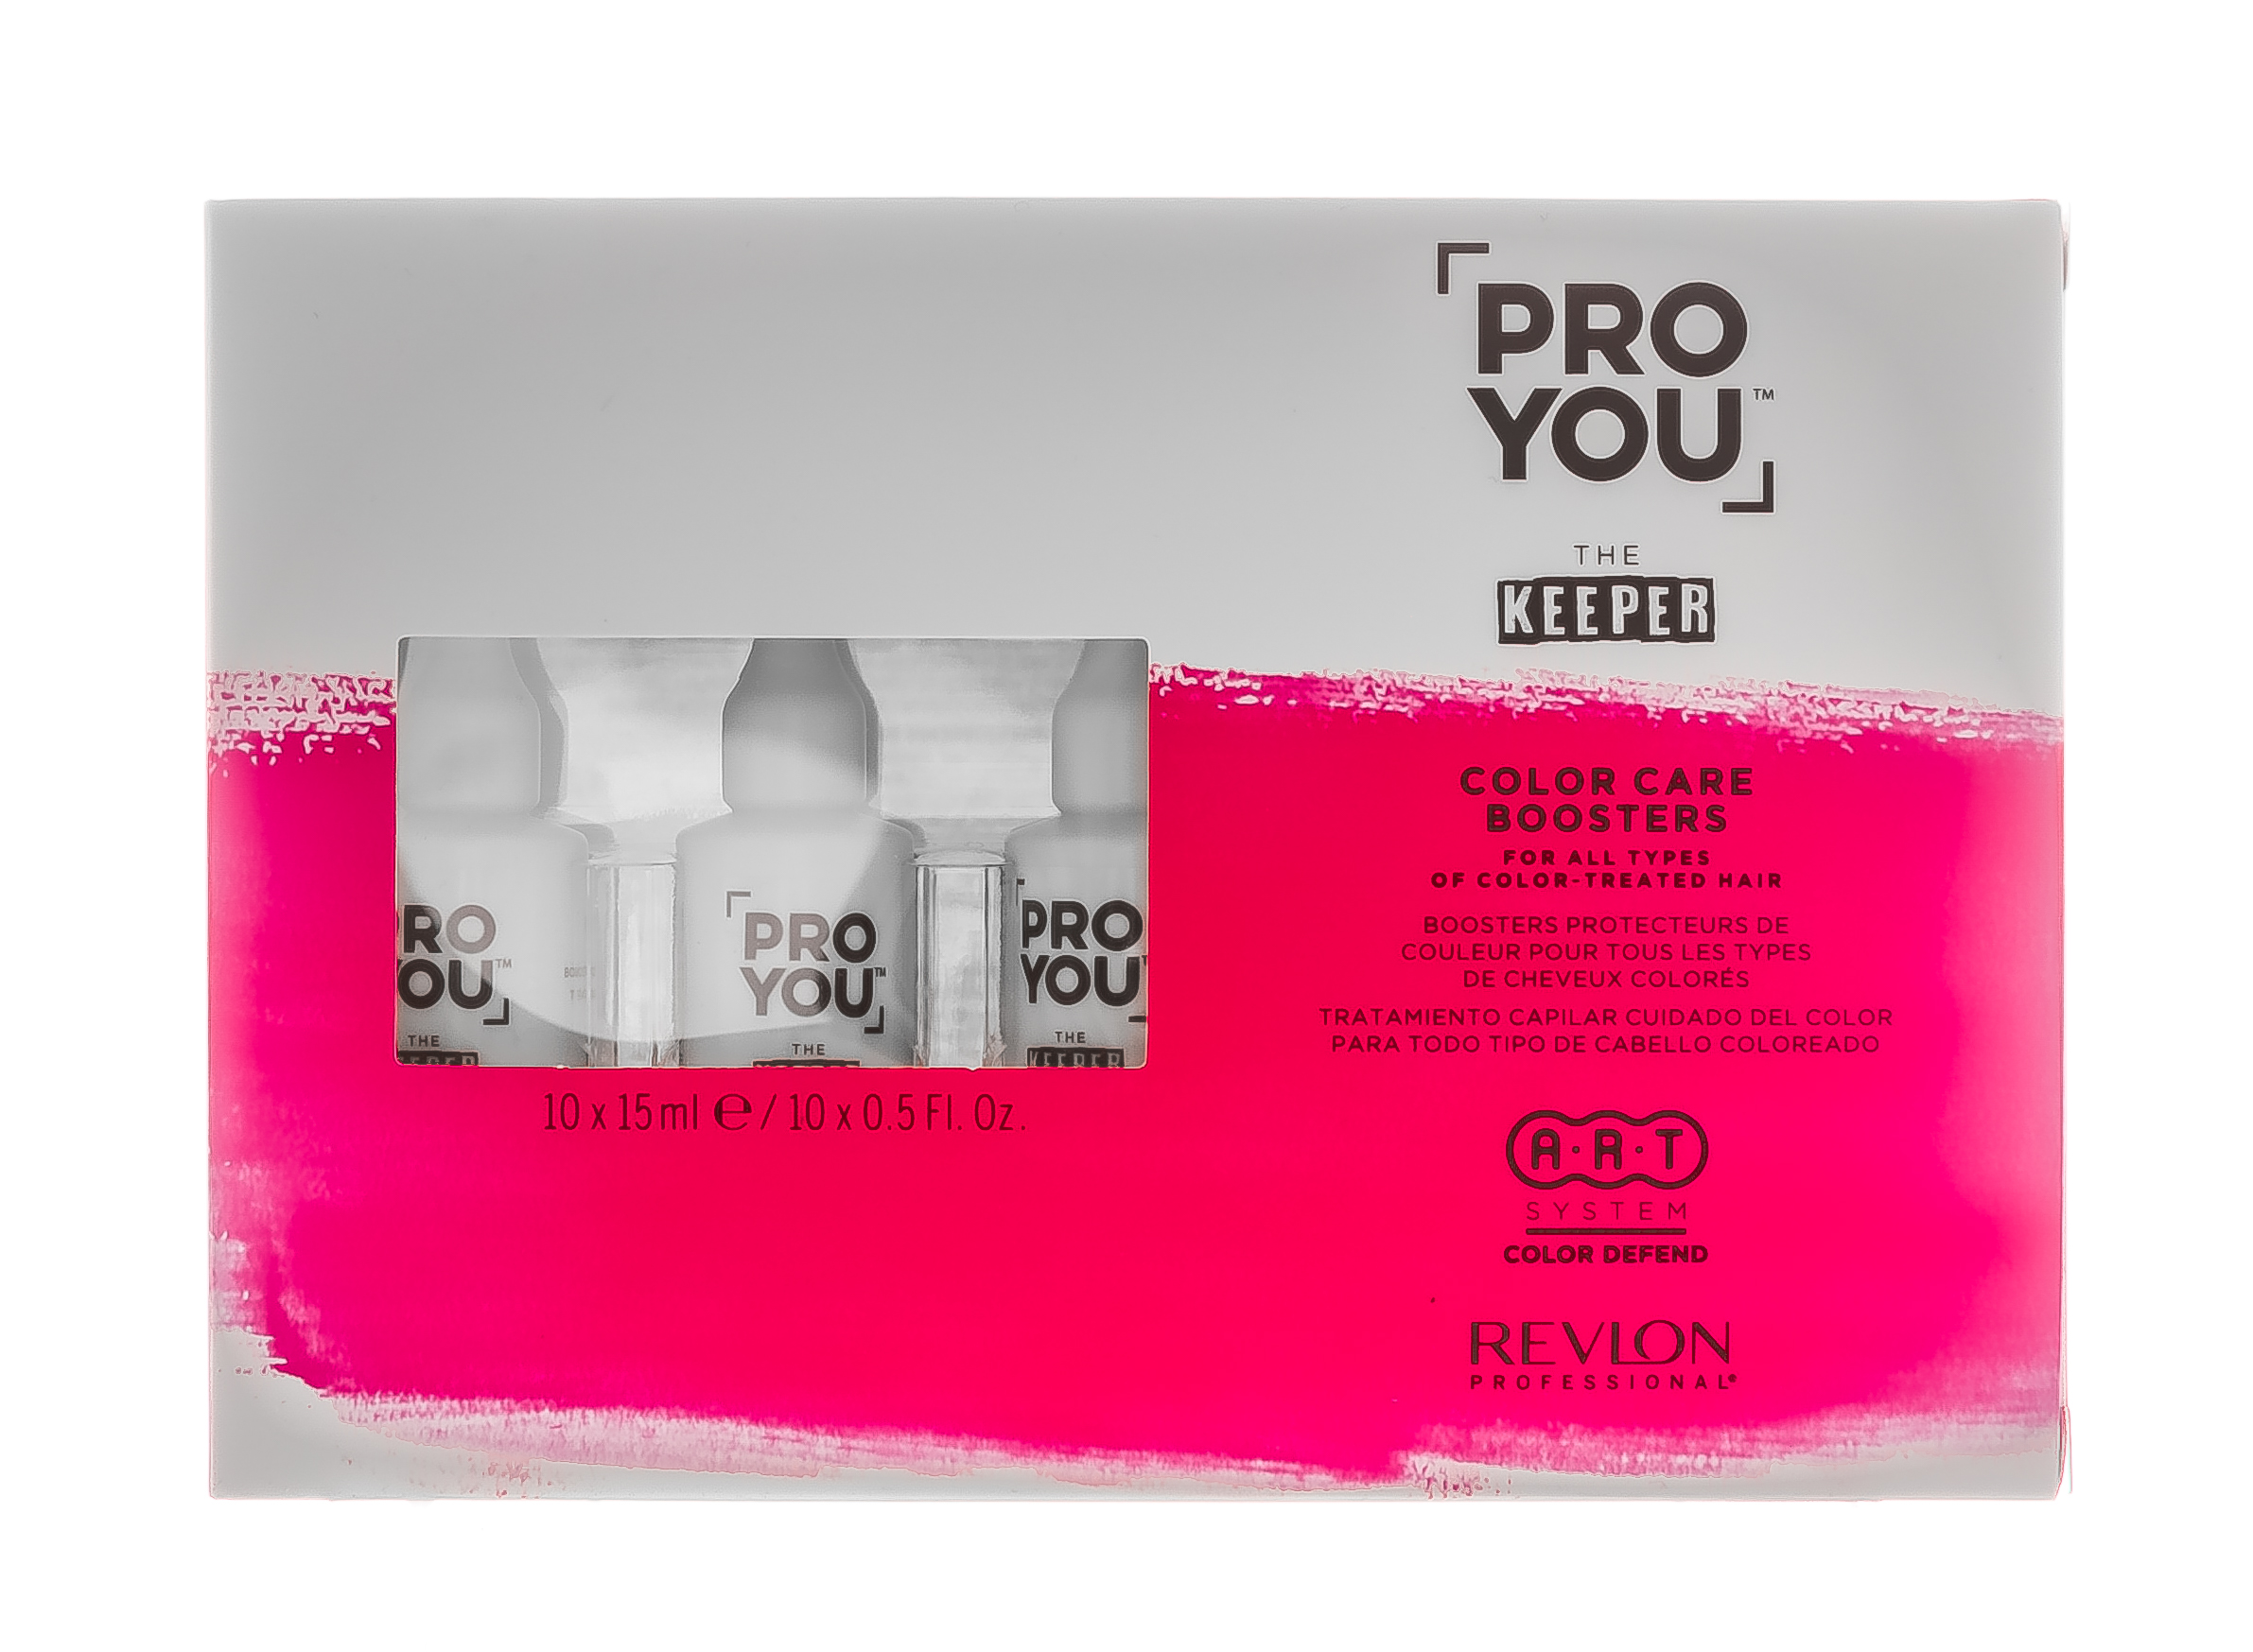 Купить Revlon Professional Бустер защита цвета для всех типов окрашенных волос Color Care Boosters, 10 шт * 15 мл (Revlon Professional, Pro You), США